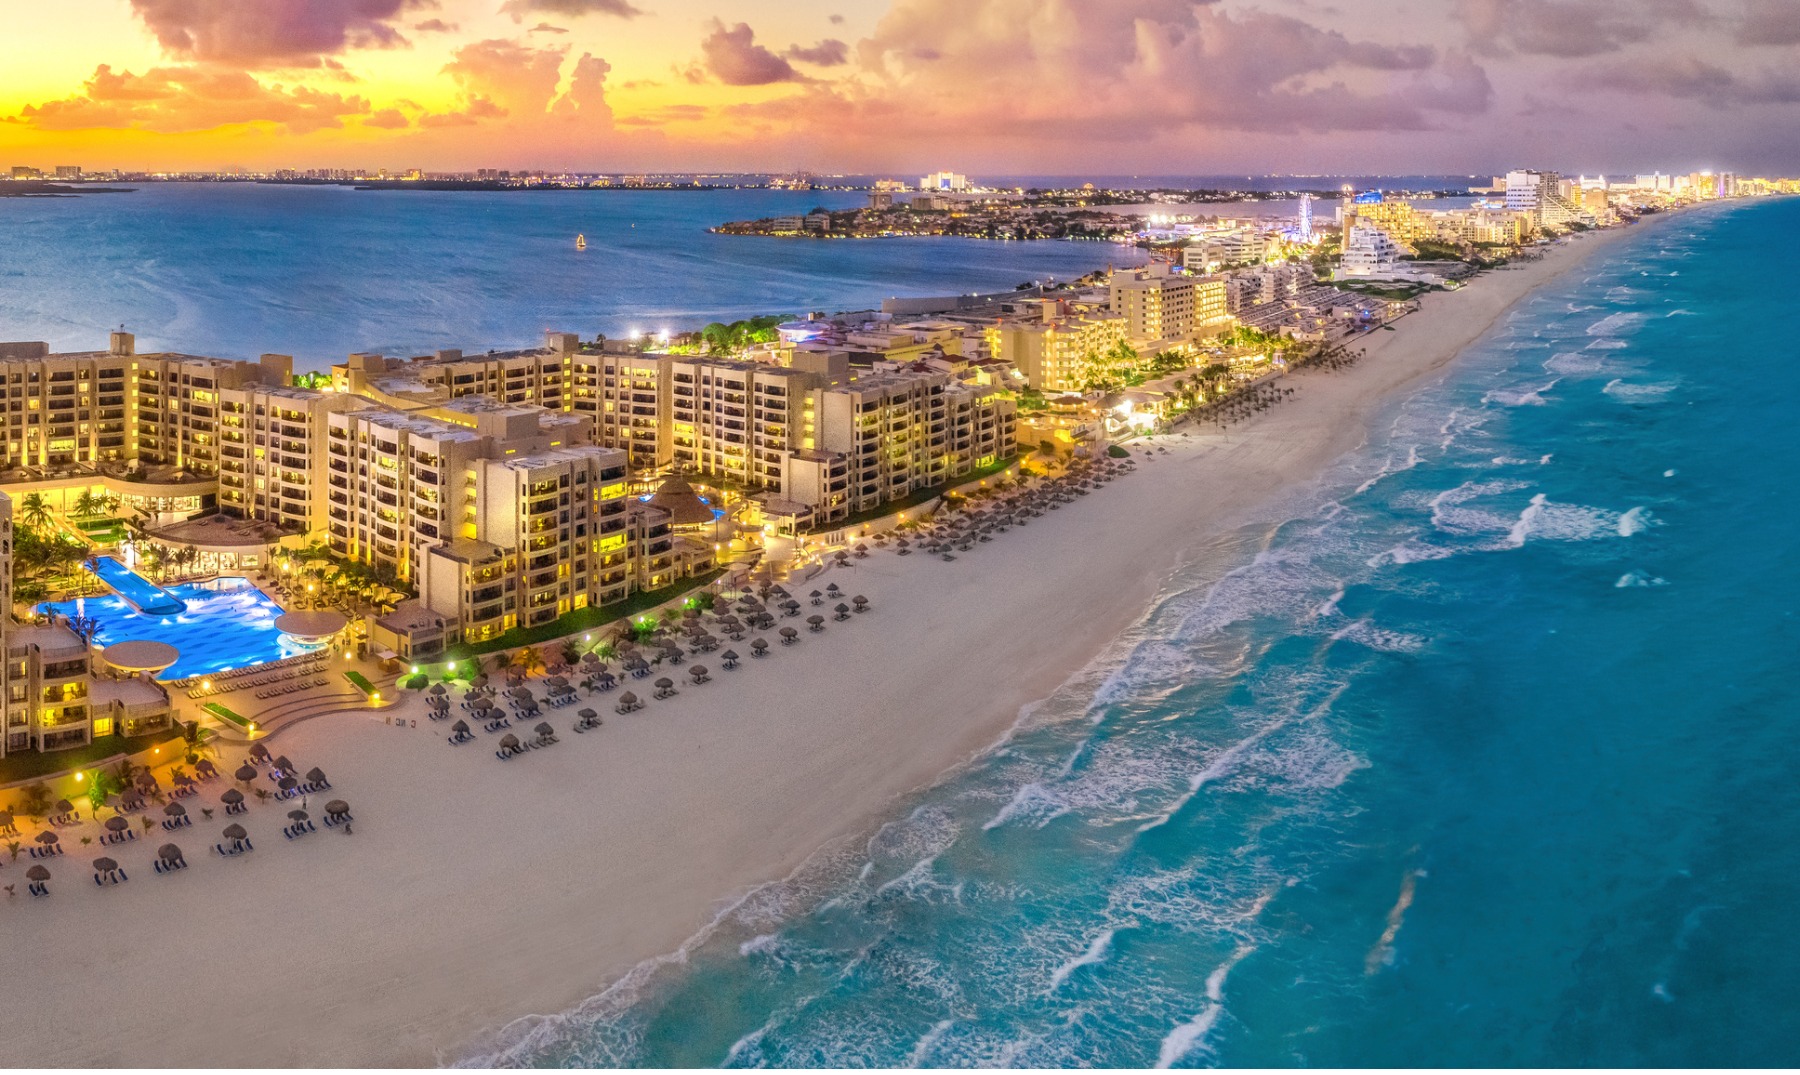 ¿Cómo planear tu viaje a Cancún? Los mejores tips